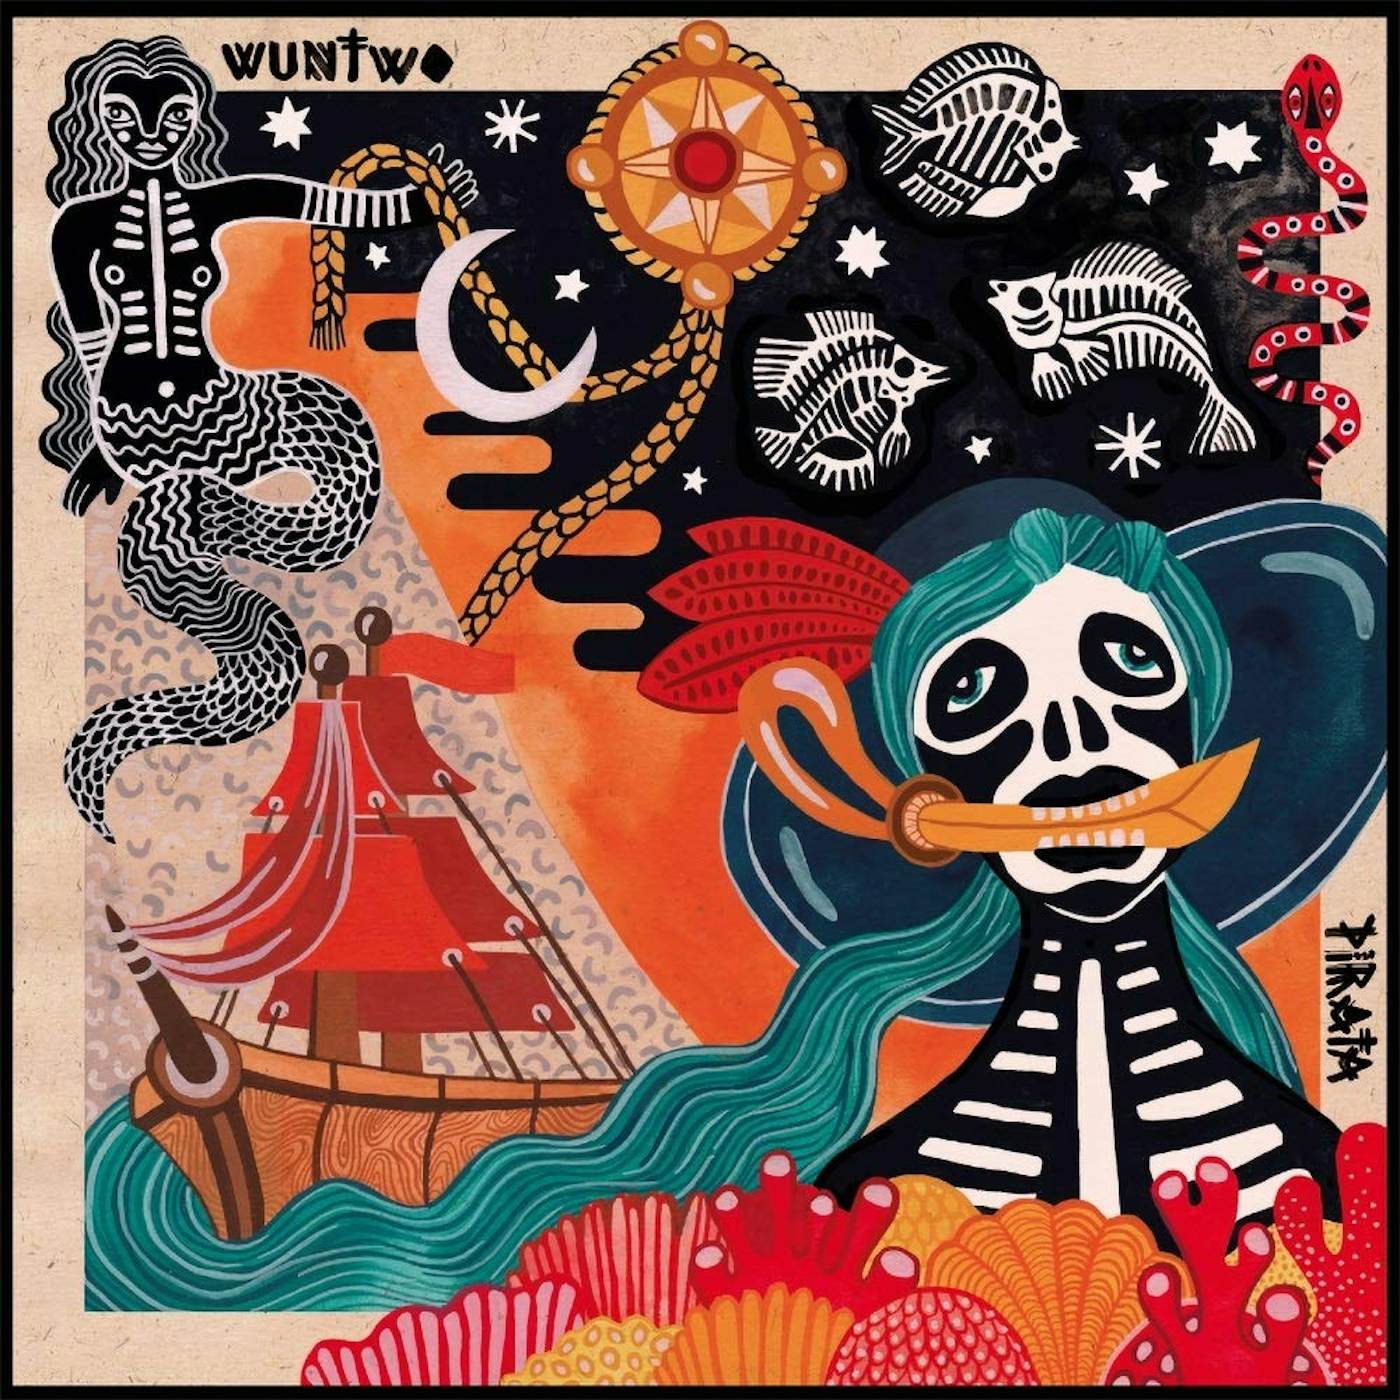 Wun Two Pirata Vinyl Record